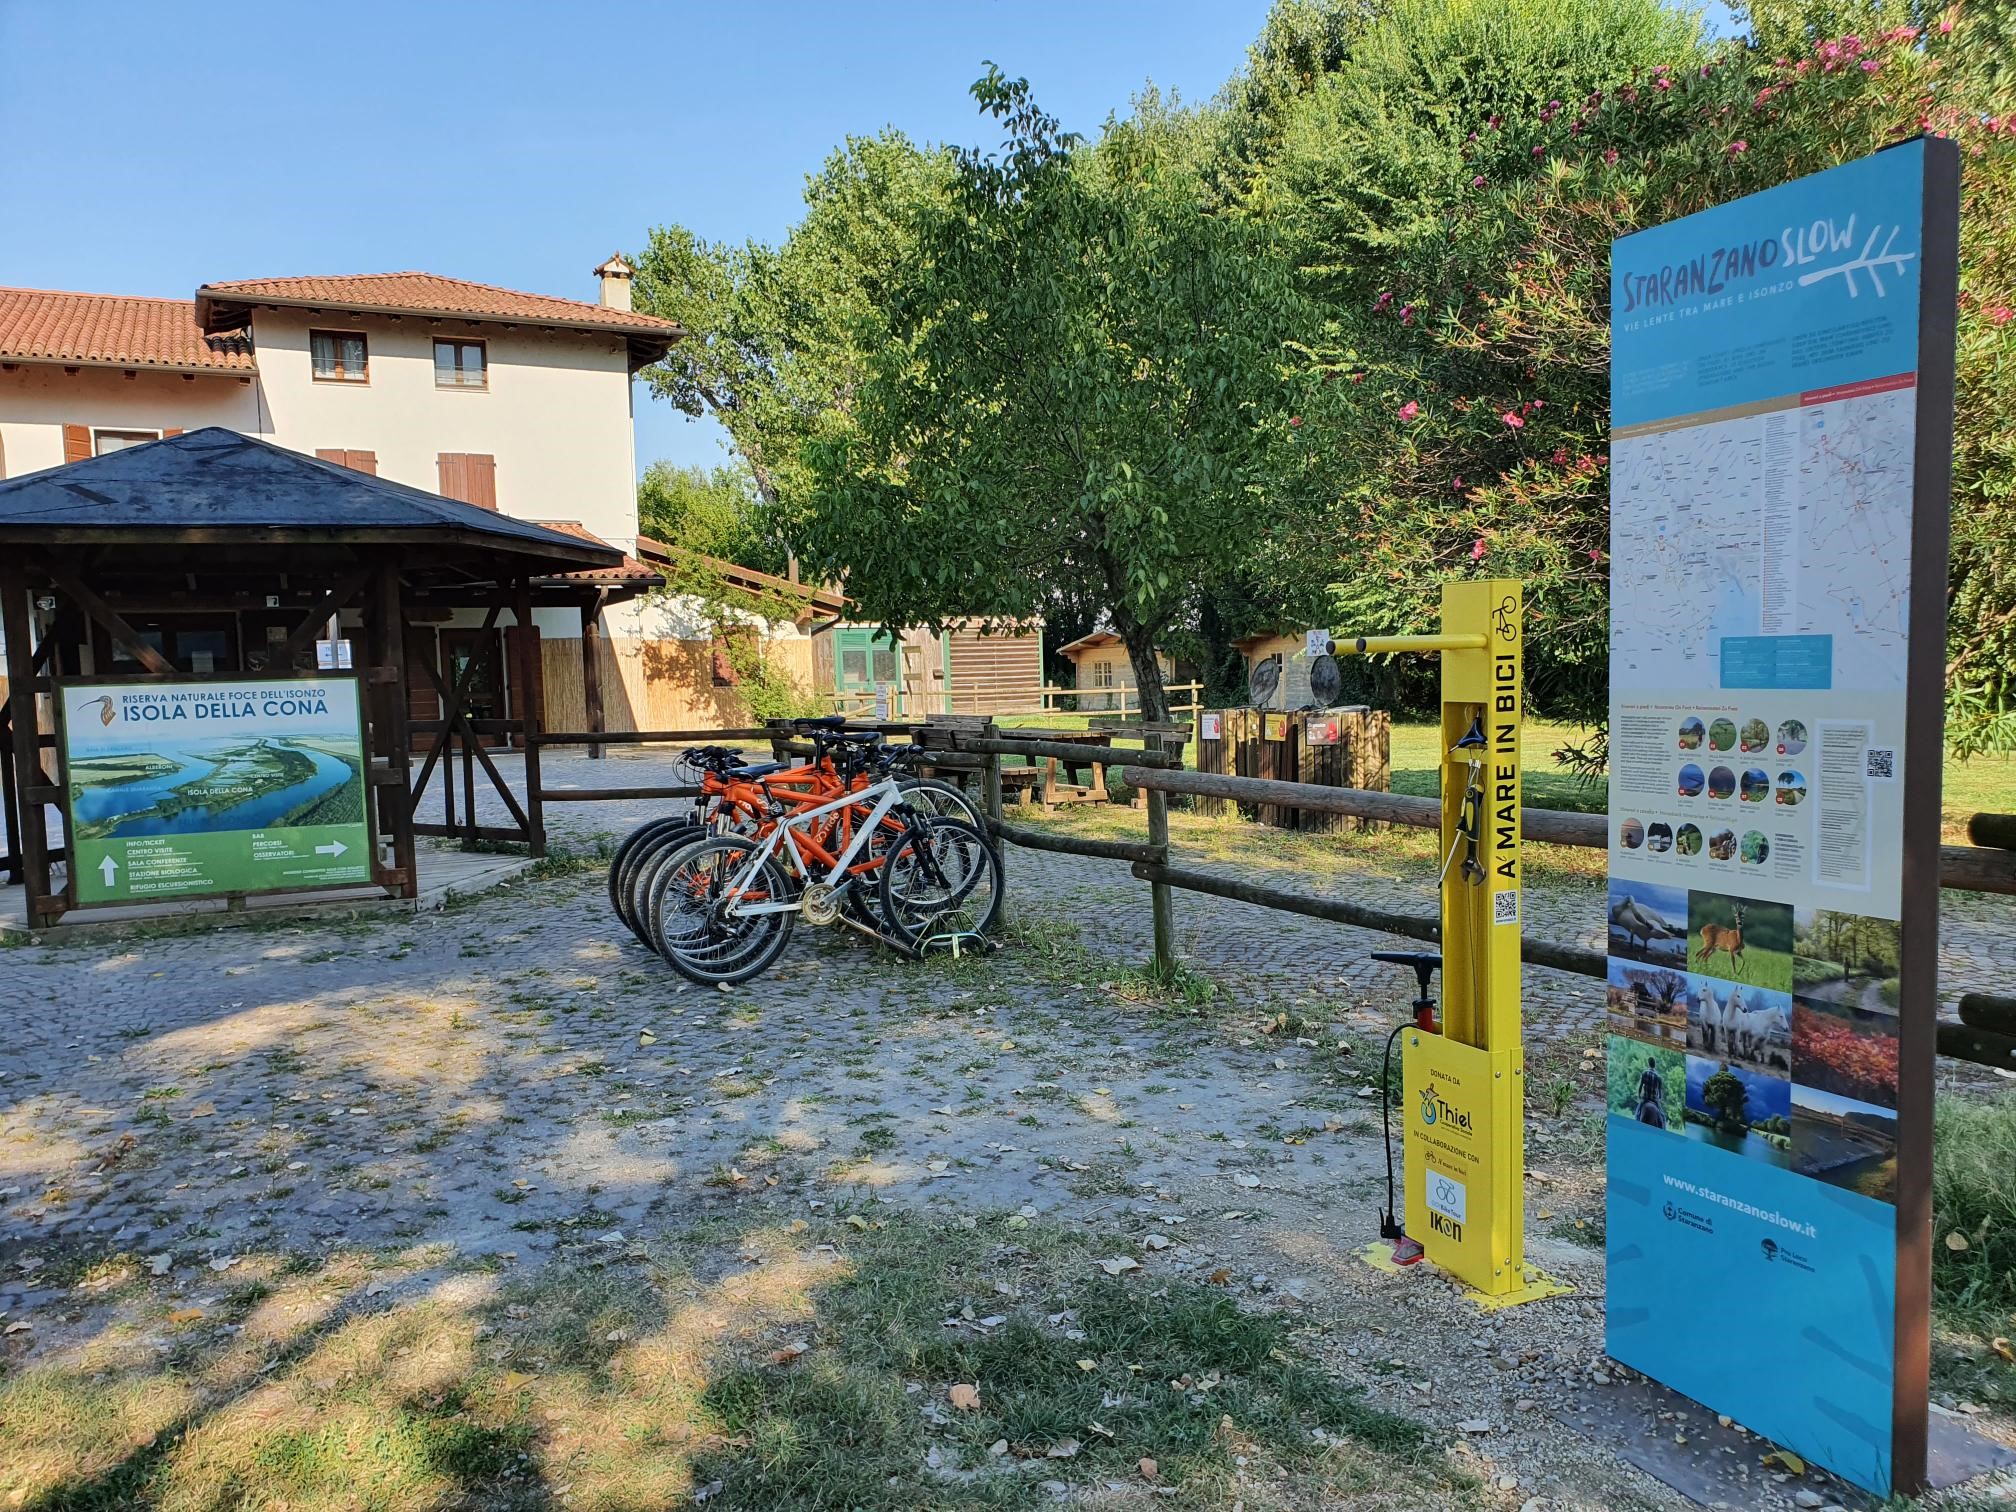 Staranzano, all'Isola della Cona una stazione di servizio per bici